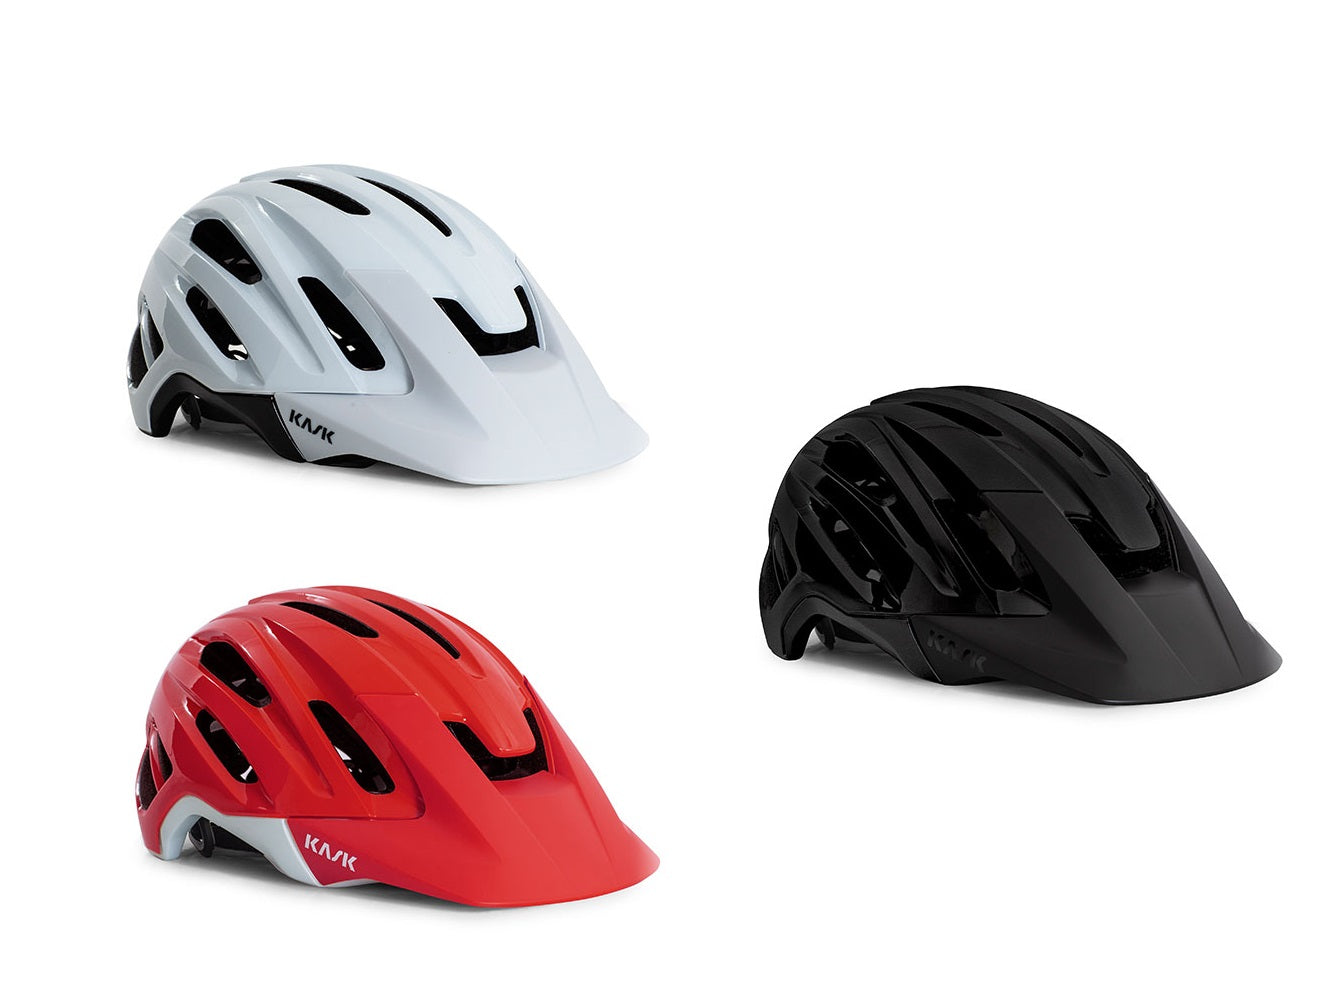 Kask Caipi Mountain Bike Helmet